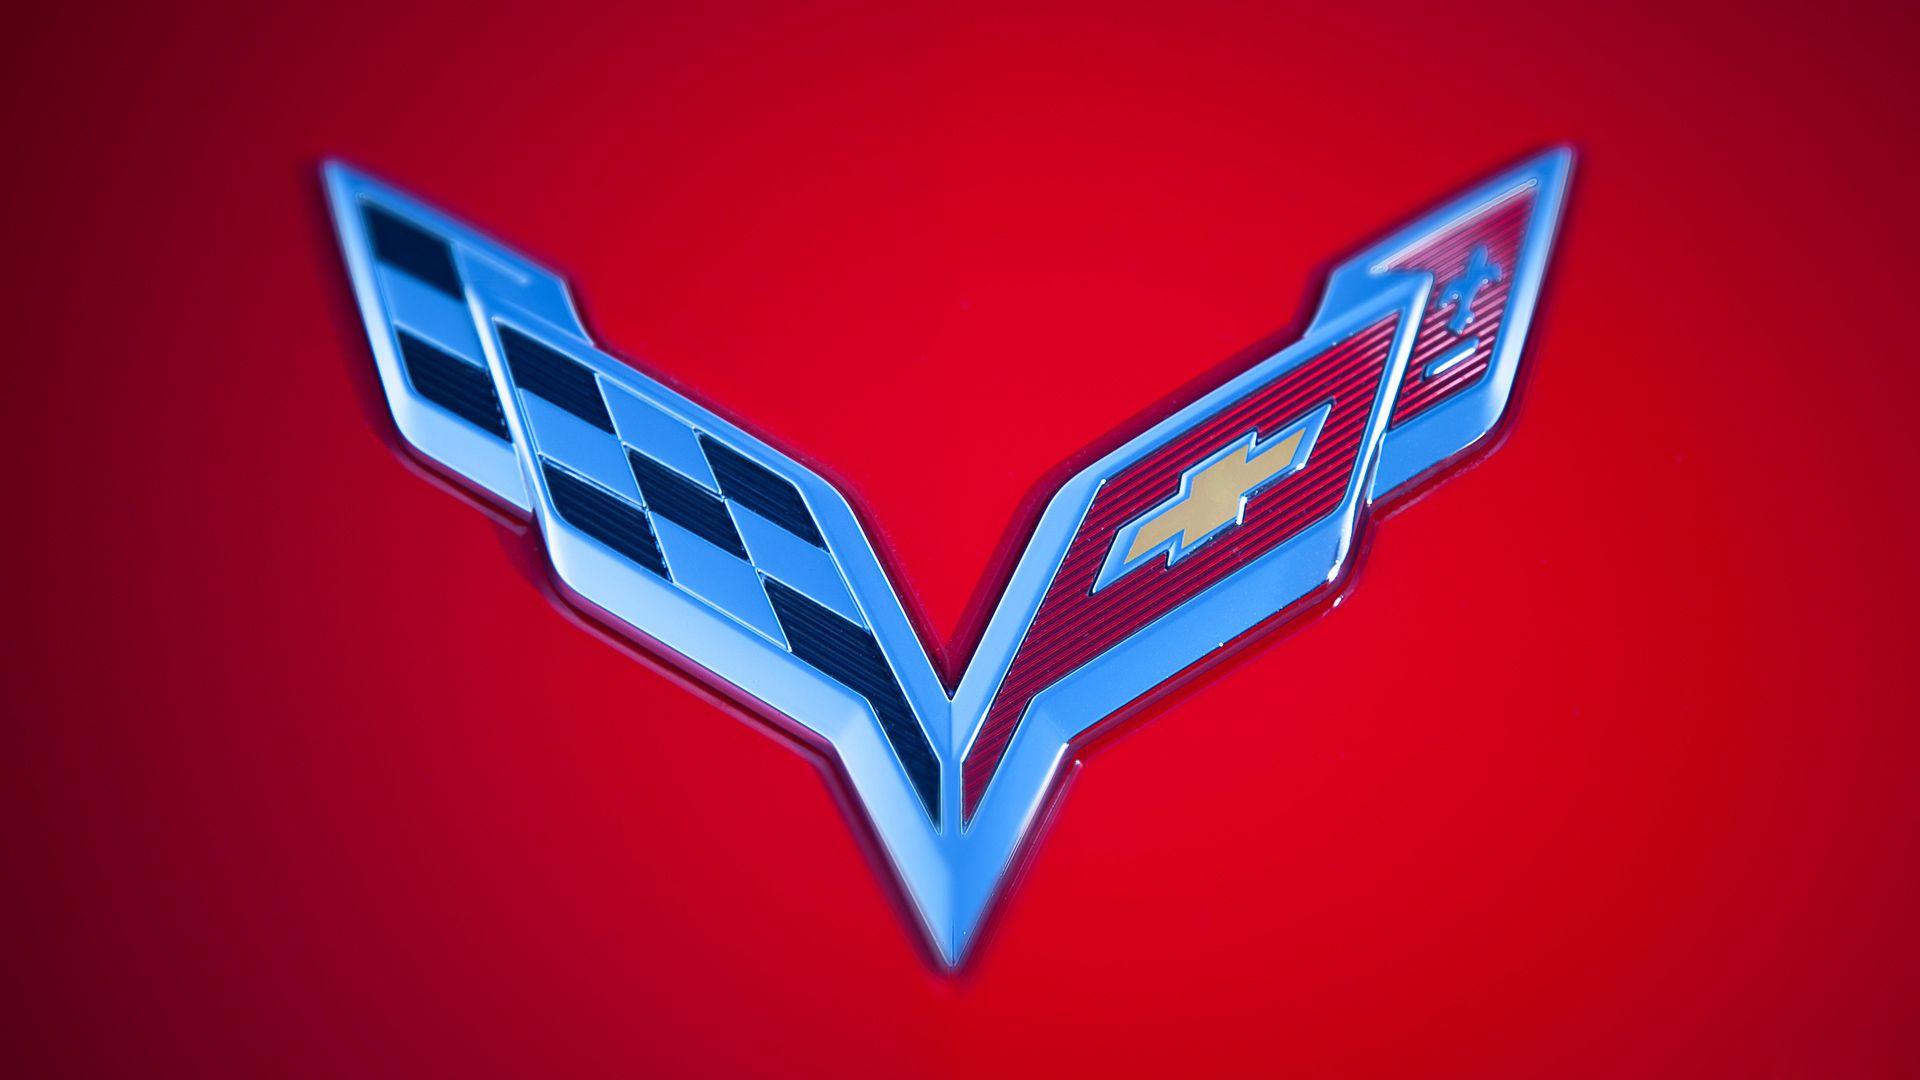 Chevy Corvette Stingray Logo - Corvette Logo Wallpapers | PixelsTalk.Net